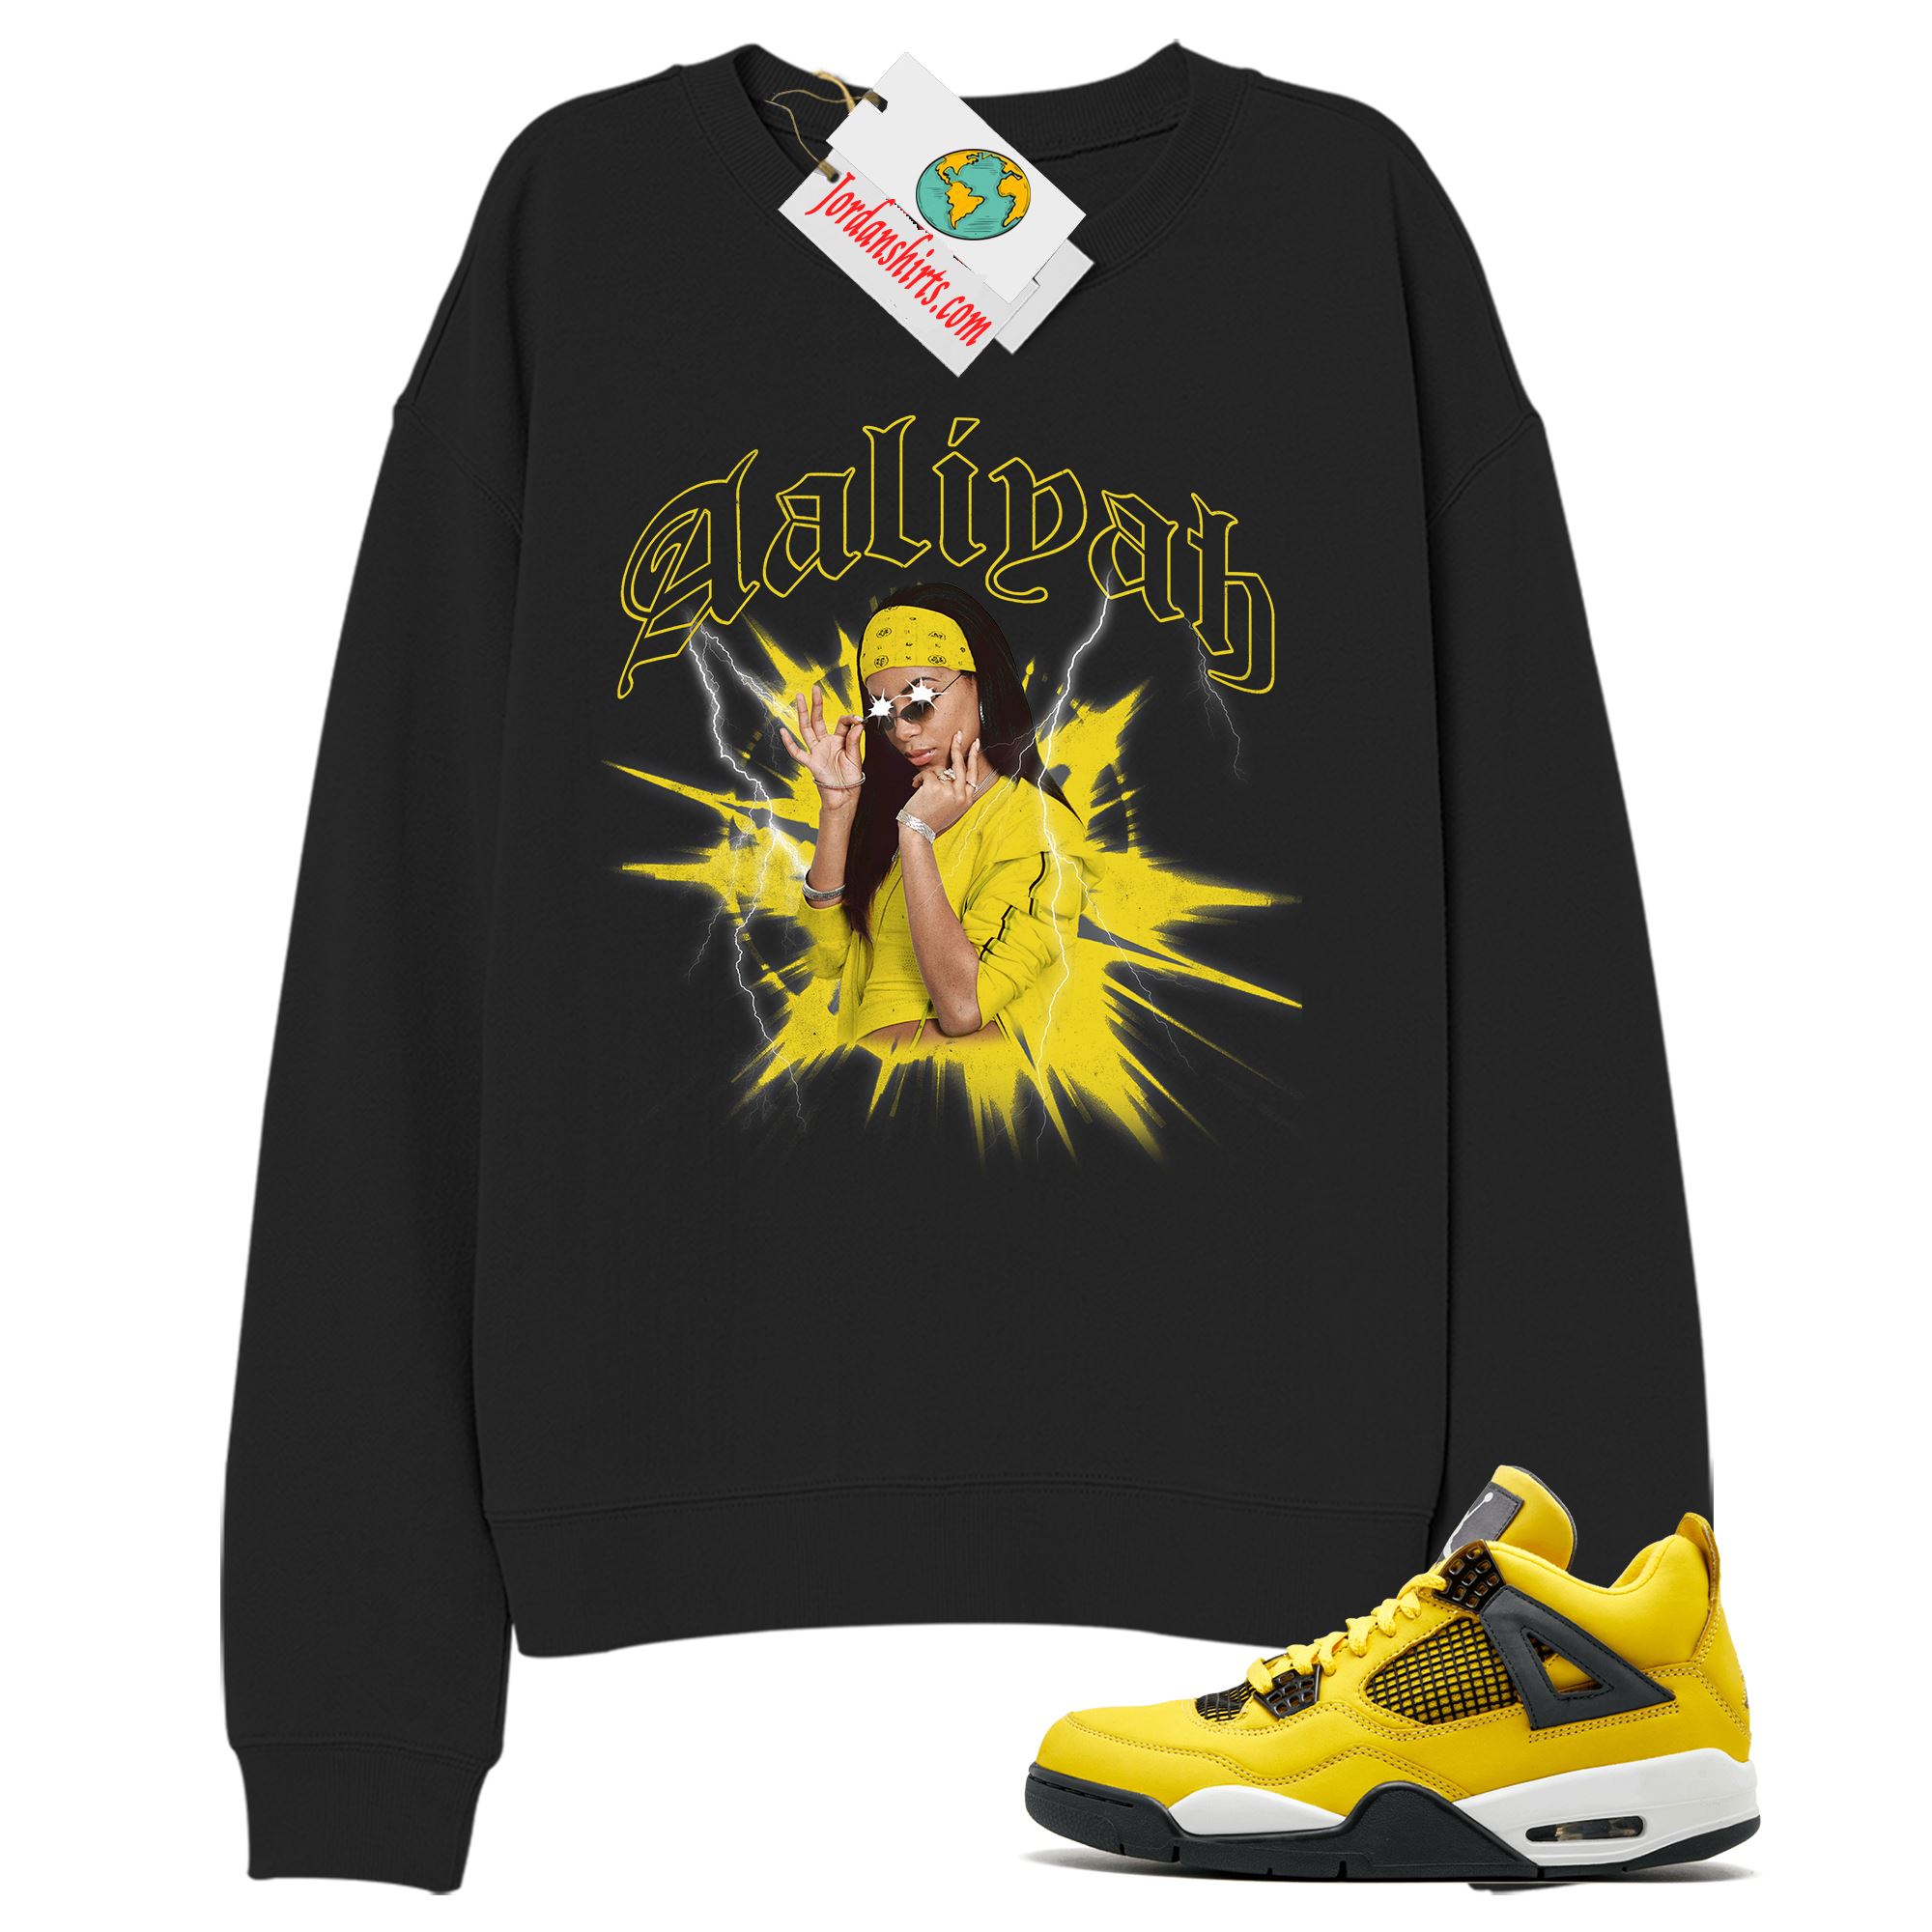 Jordan 4 Sweatshirt, Legend Aaliyah Black Sweatshirt Air Jordan 4 Tour Yellow Lightning 4s Full Size Up To 5xl